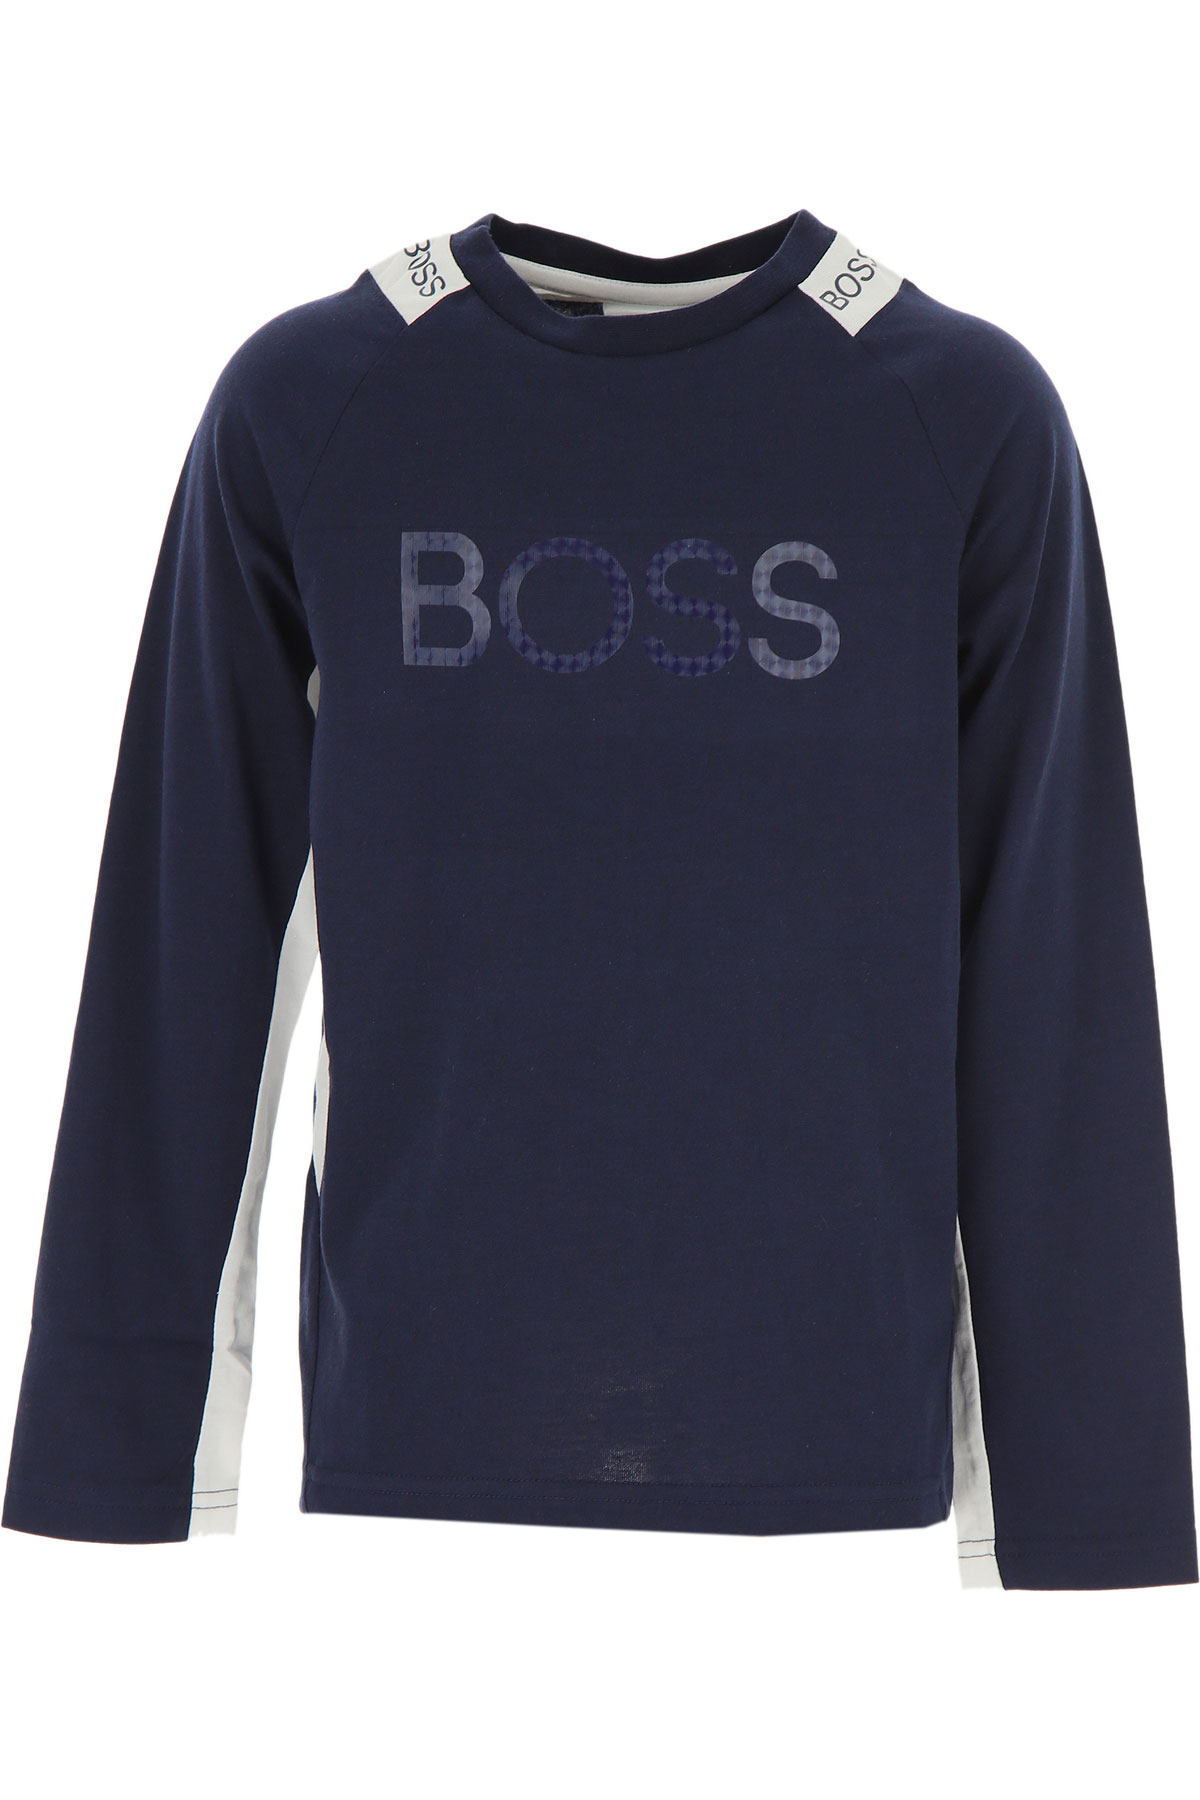 Hugo Boss Kinder T-Shirt für Jungen Günstig im Sale, Marine blau, Polyester, 2017, 10Y 12Y 14Y 4Y 5Y 8Y